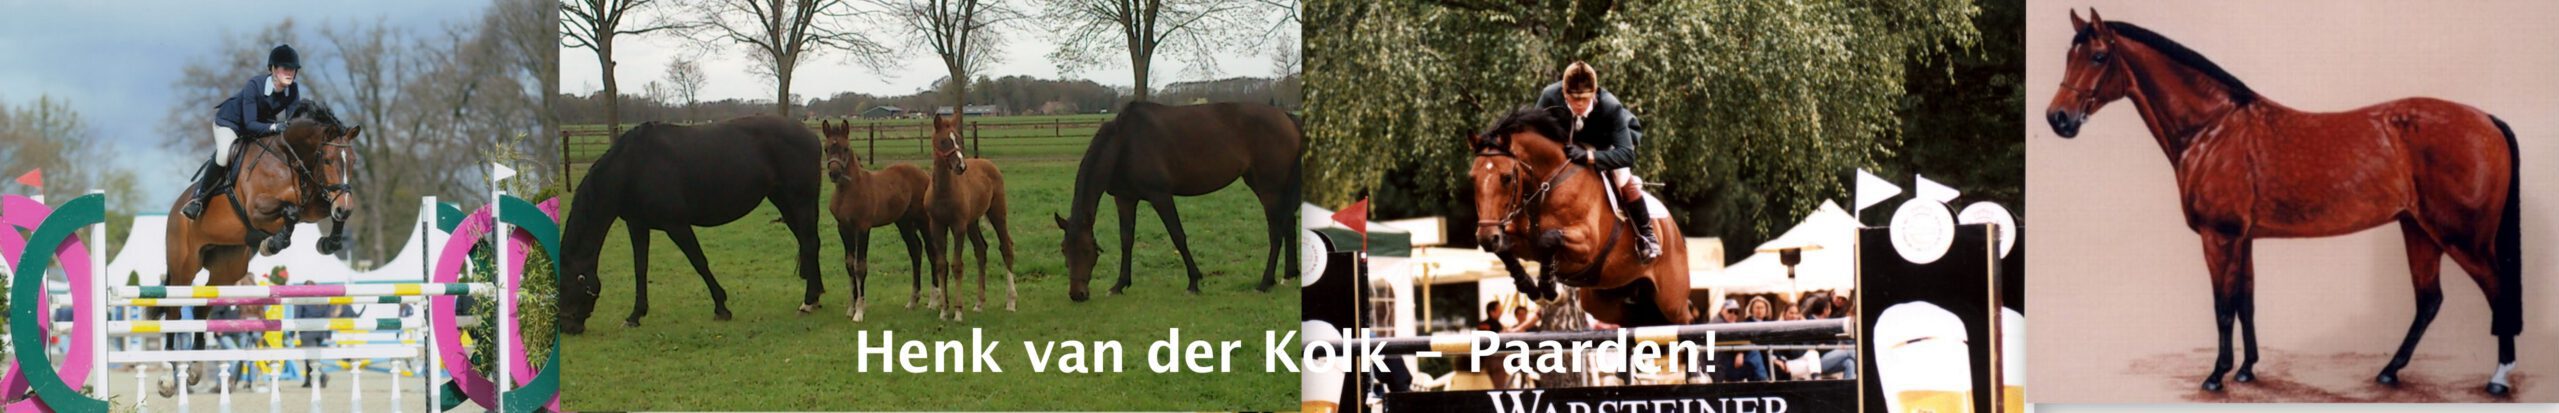 Henk van der Kolk – Paarden